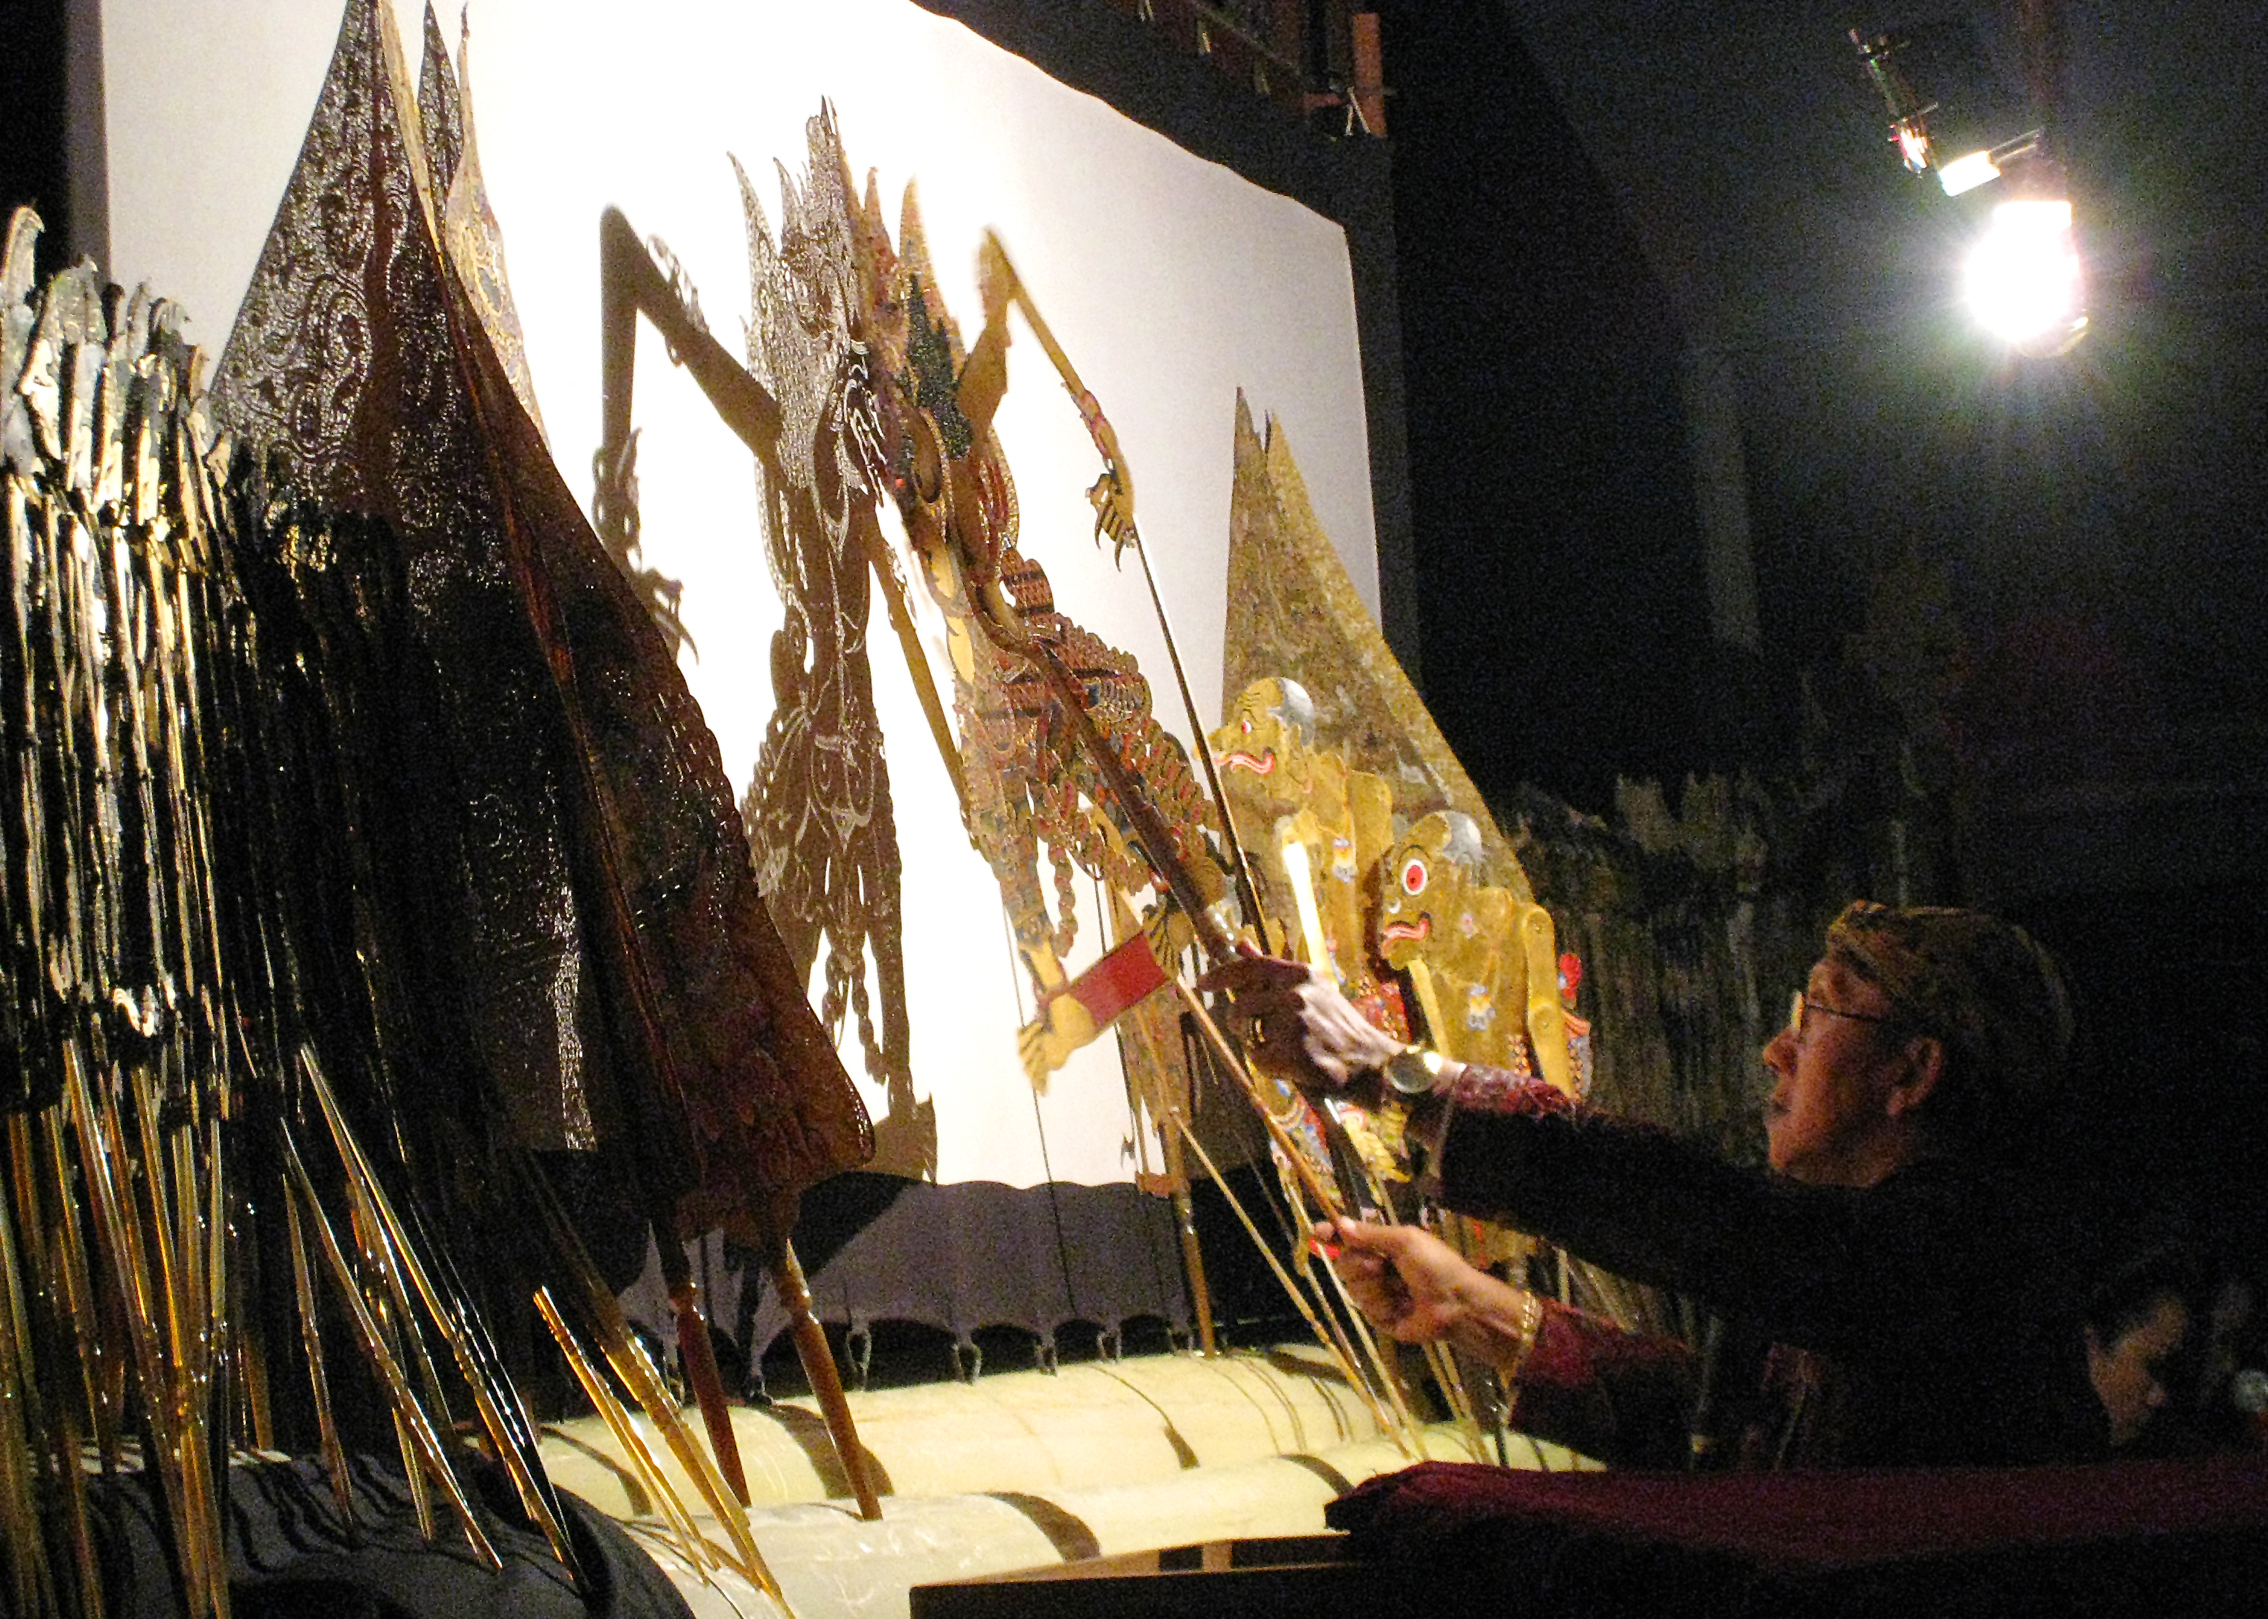 Wayang poppentheater door een Indonesische poppenspeler